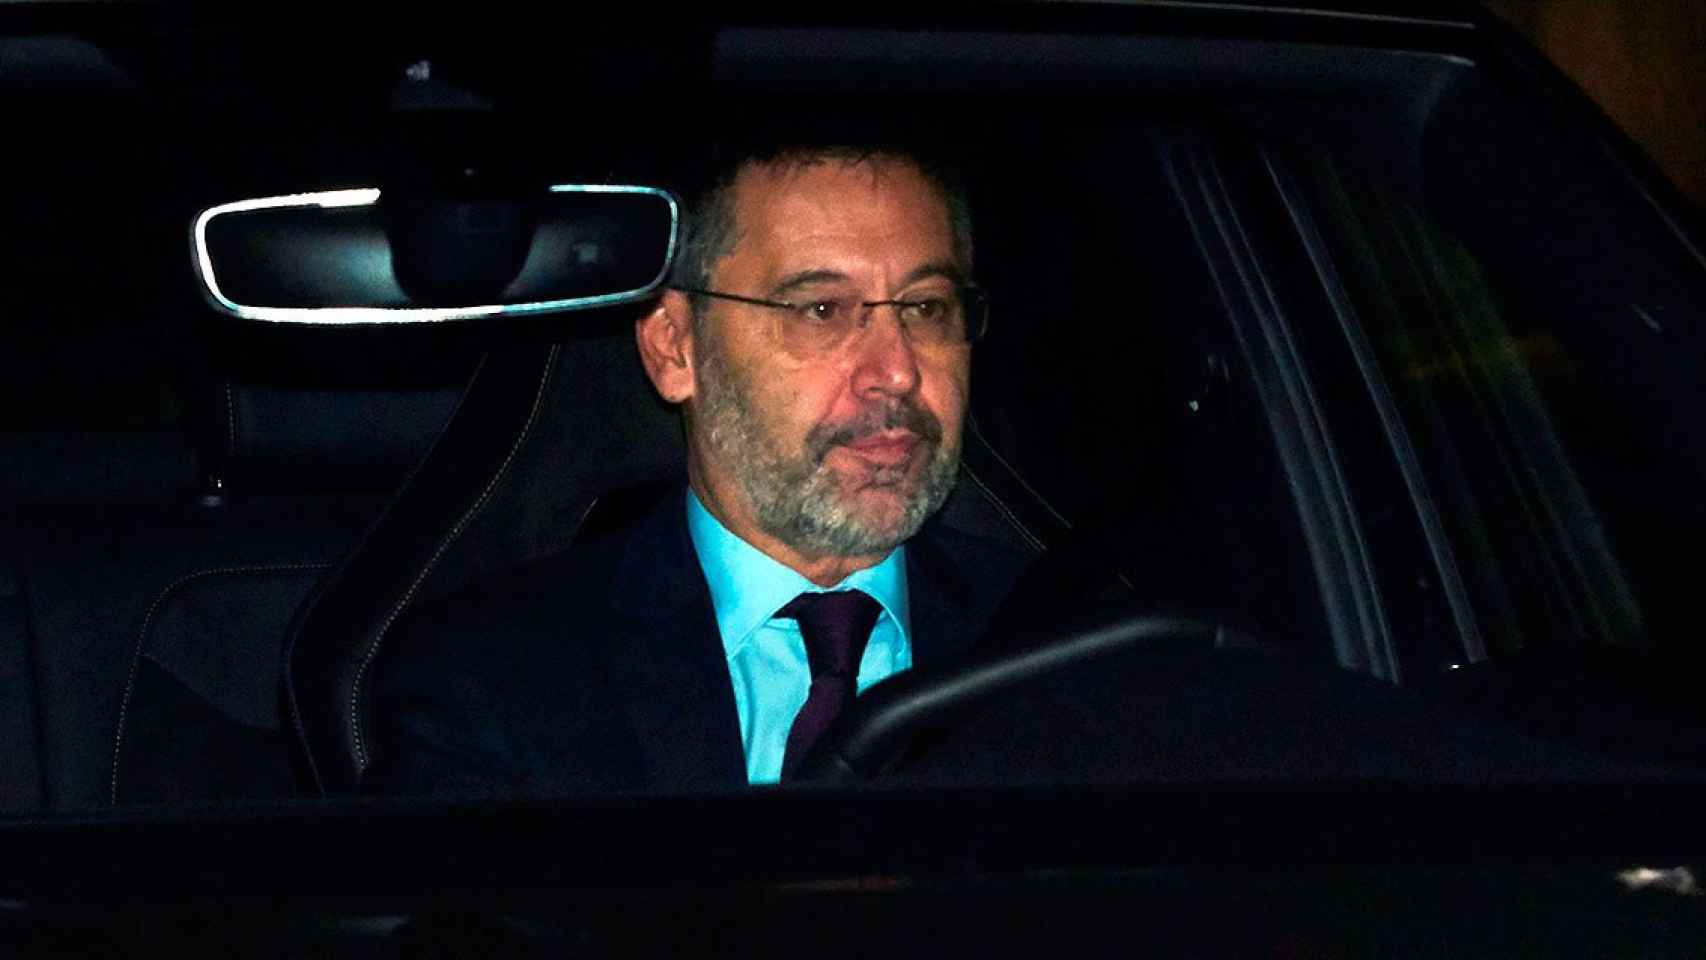 Bartomeu llega en coche al Camp Nou antes de anunciar su dimisión / EFE